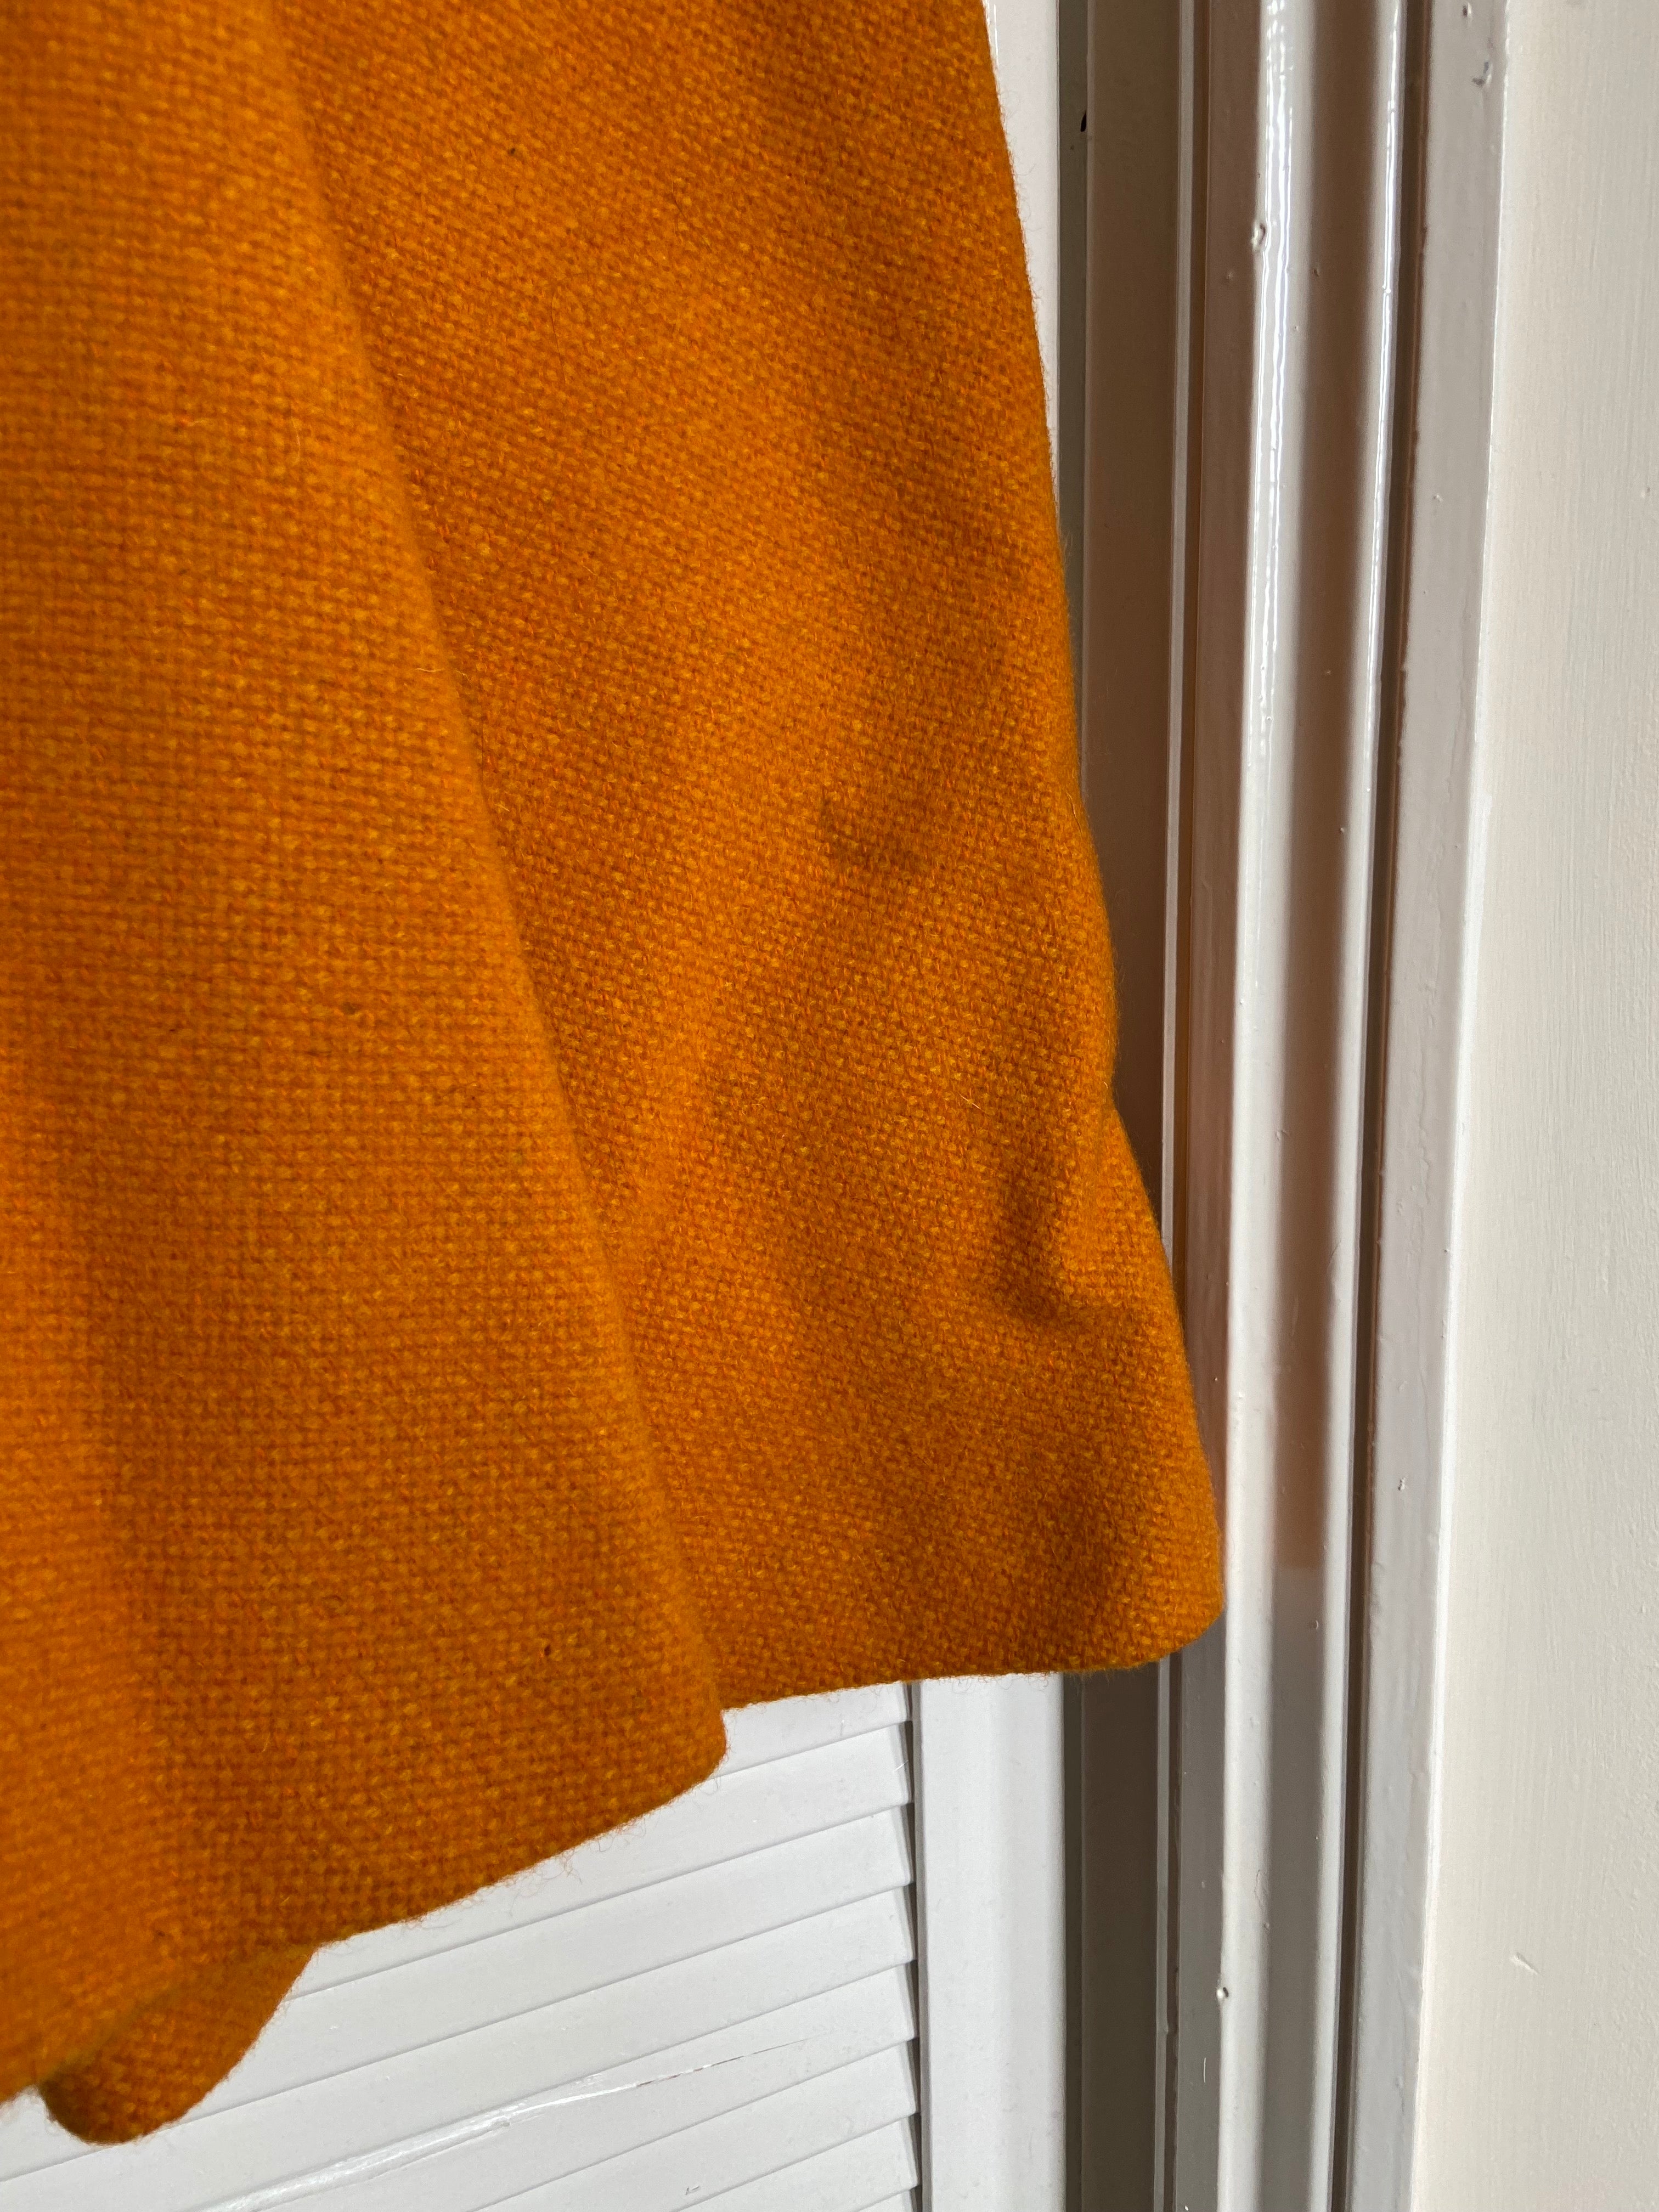 Preloved Orange woollen dress